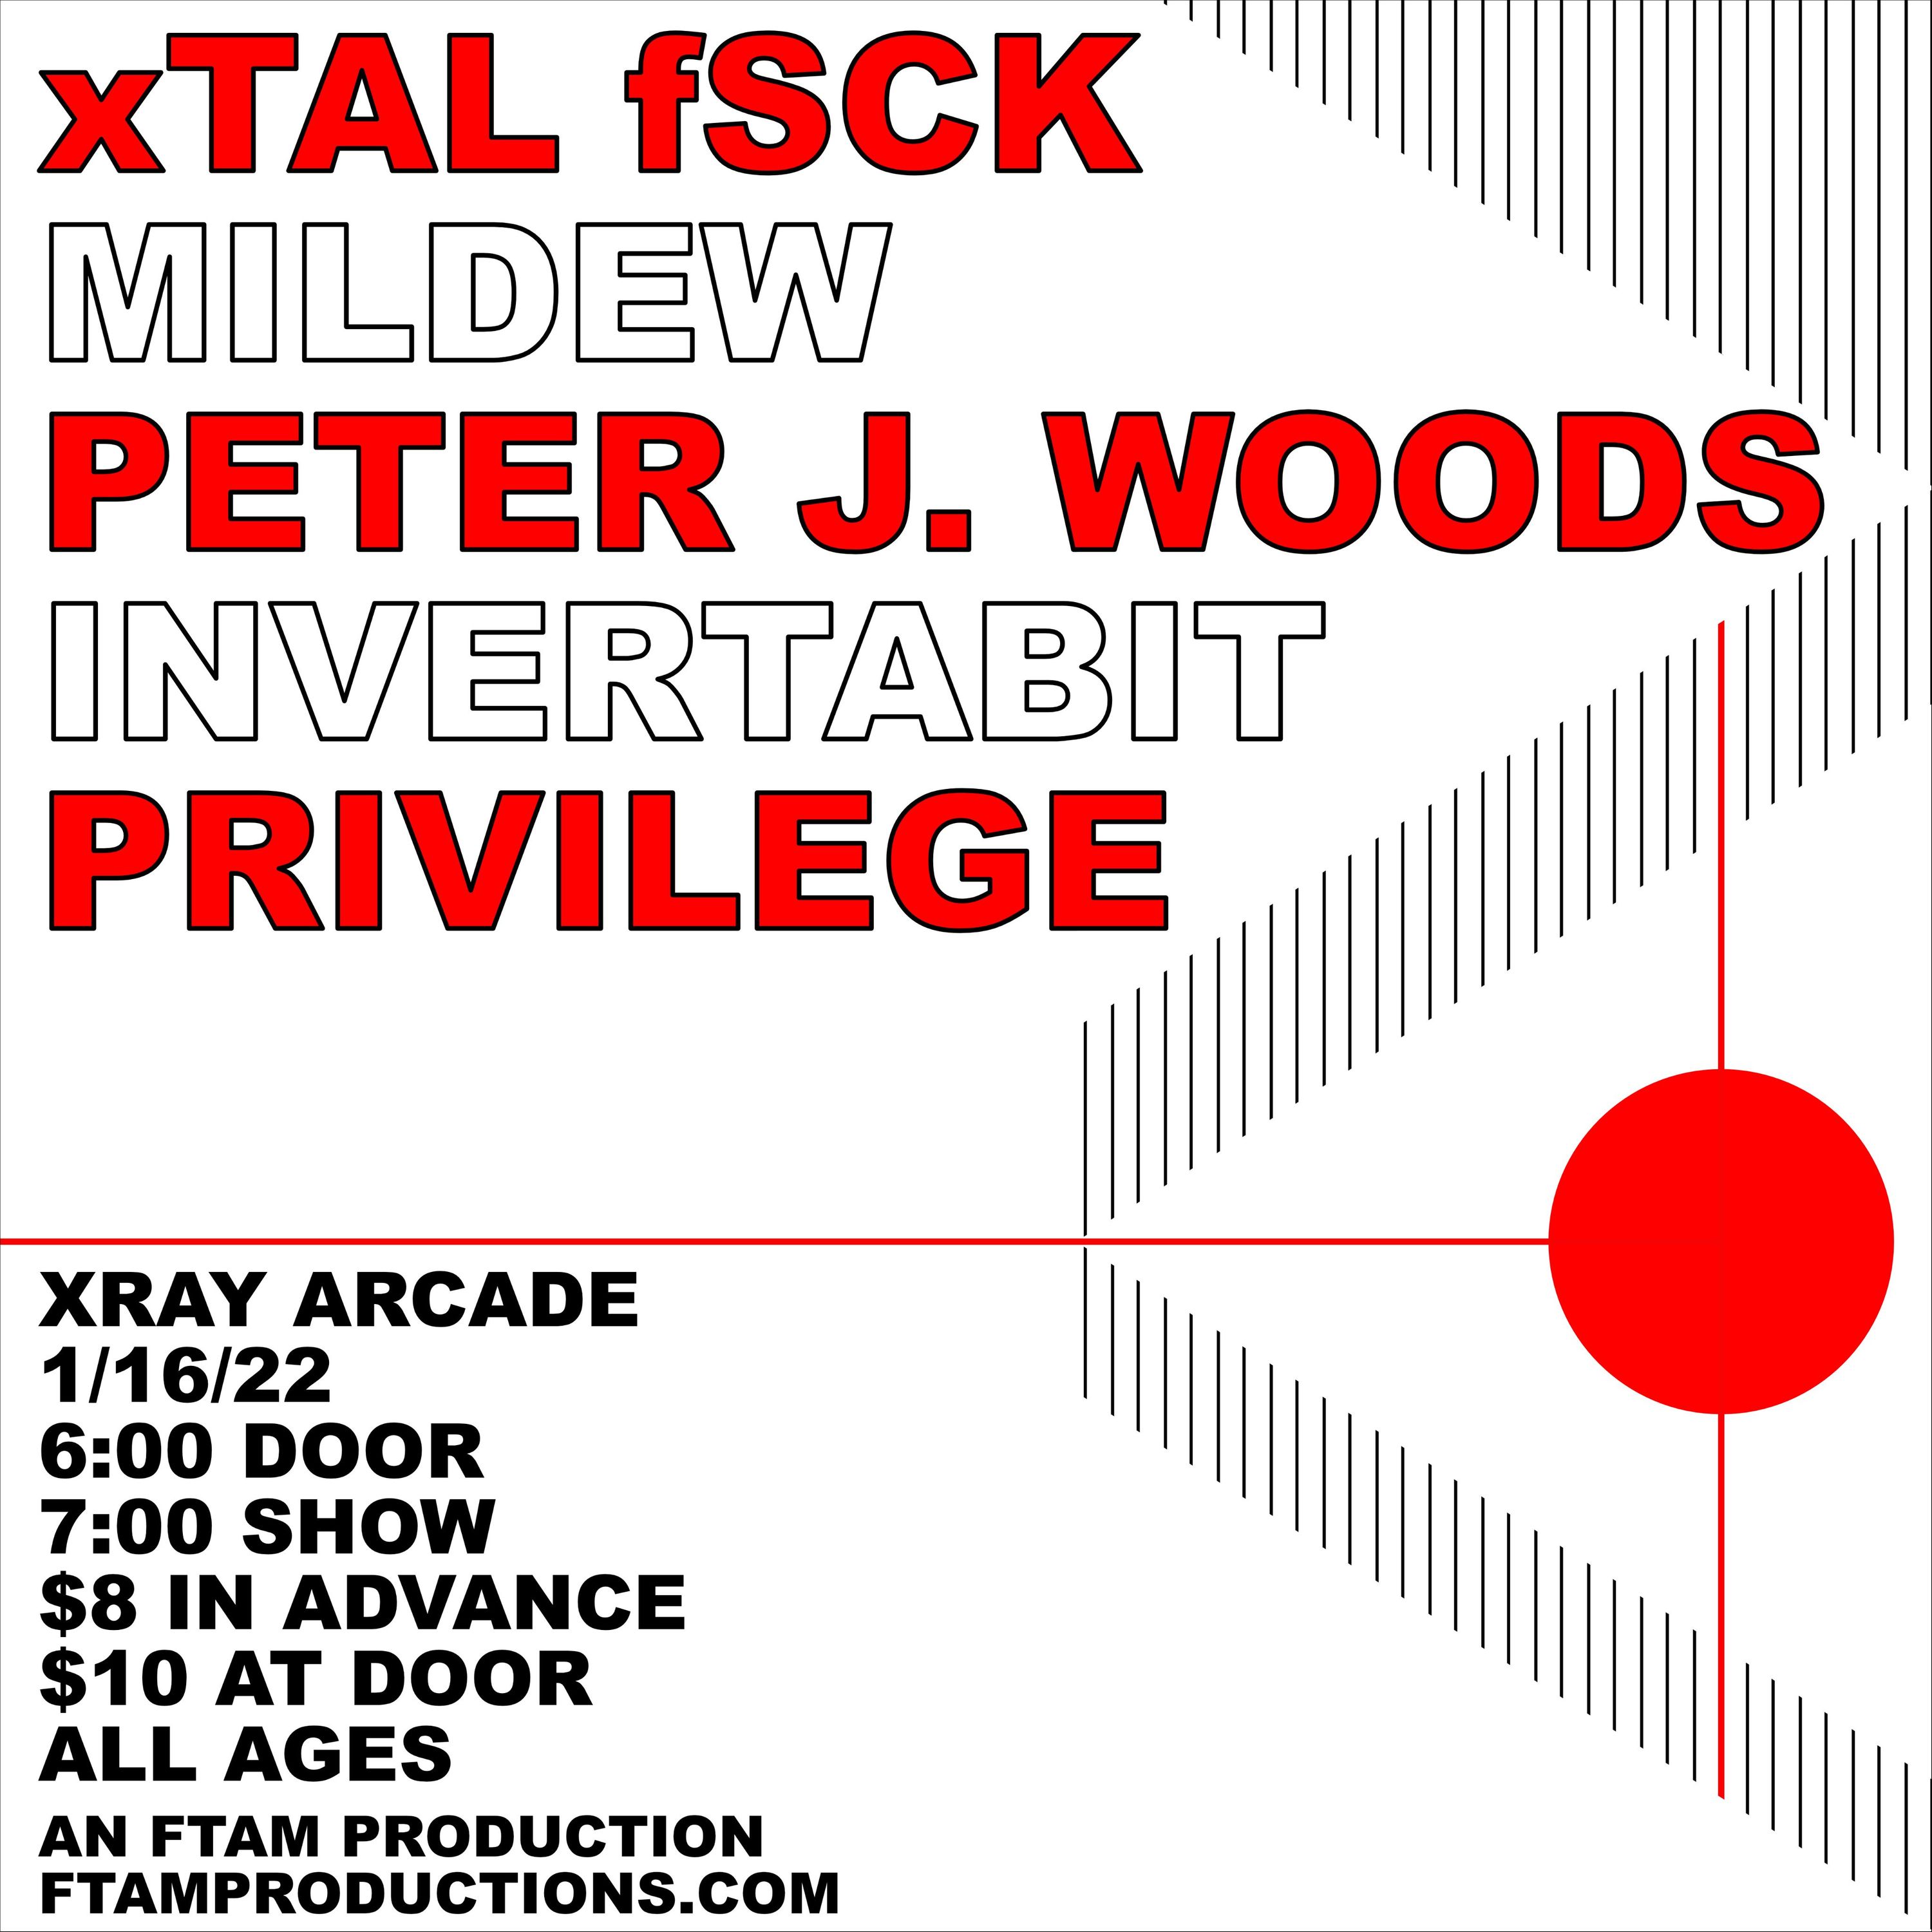 xTAL fSCK XRay Arcade Flyer